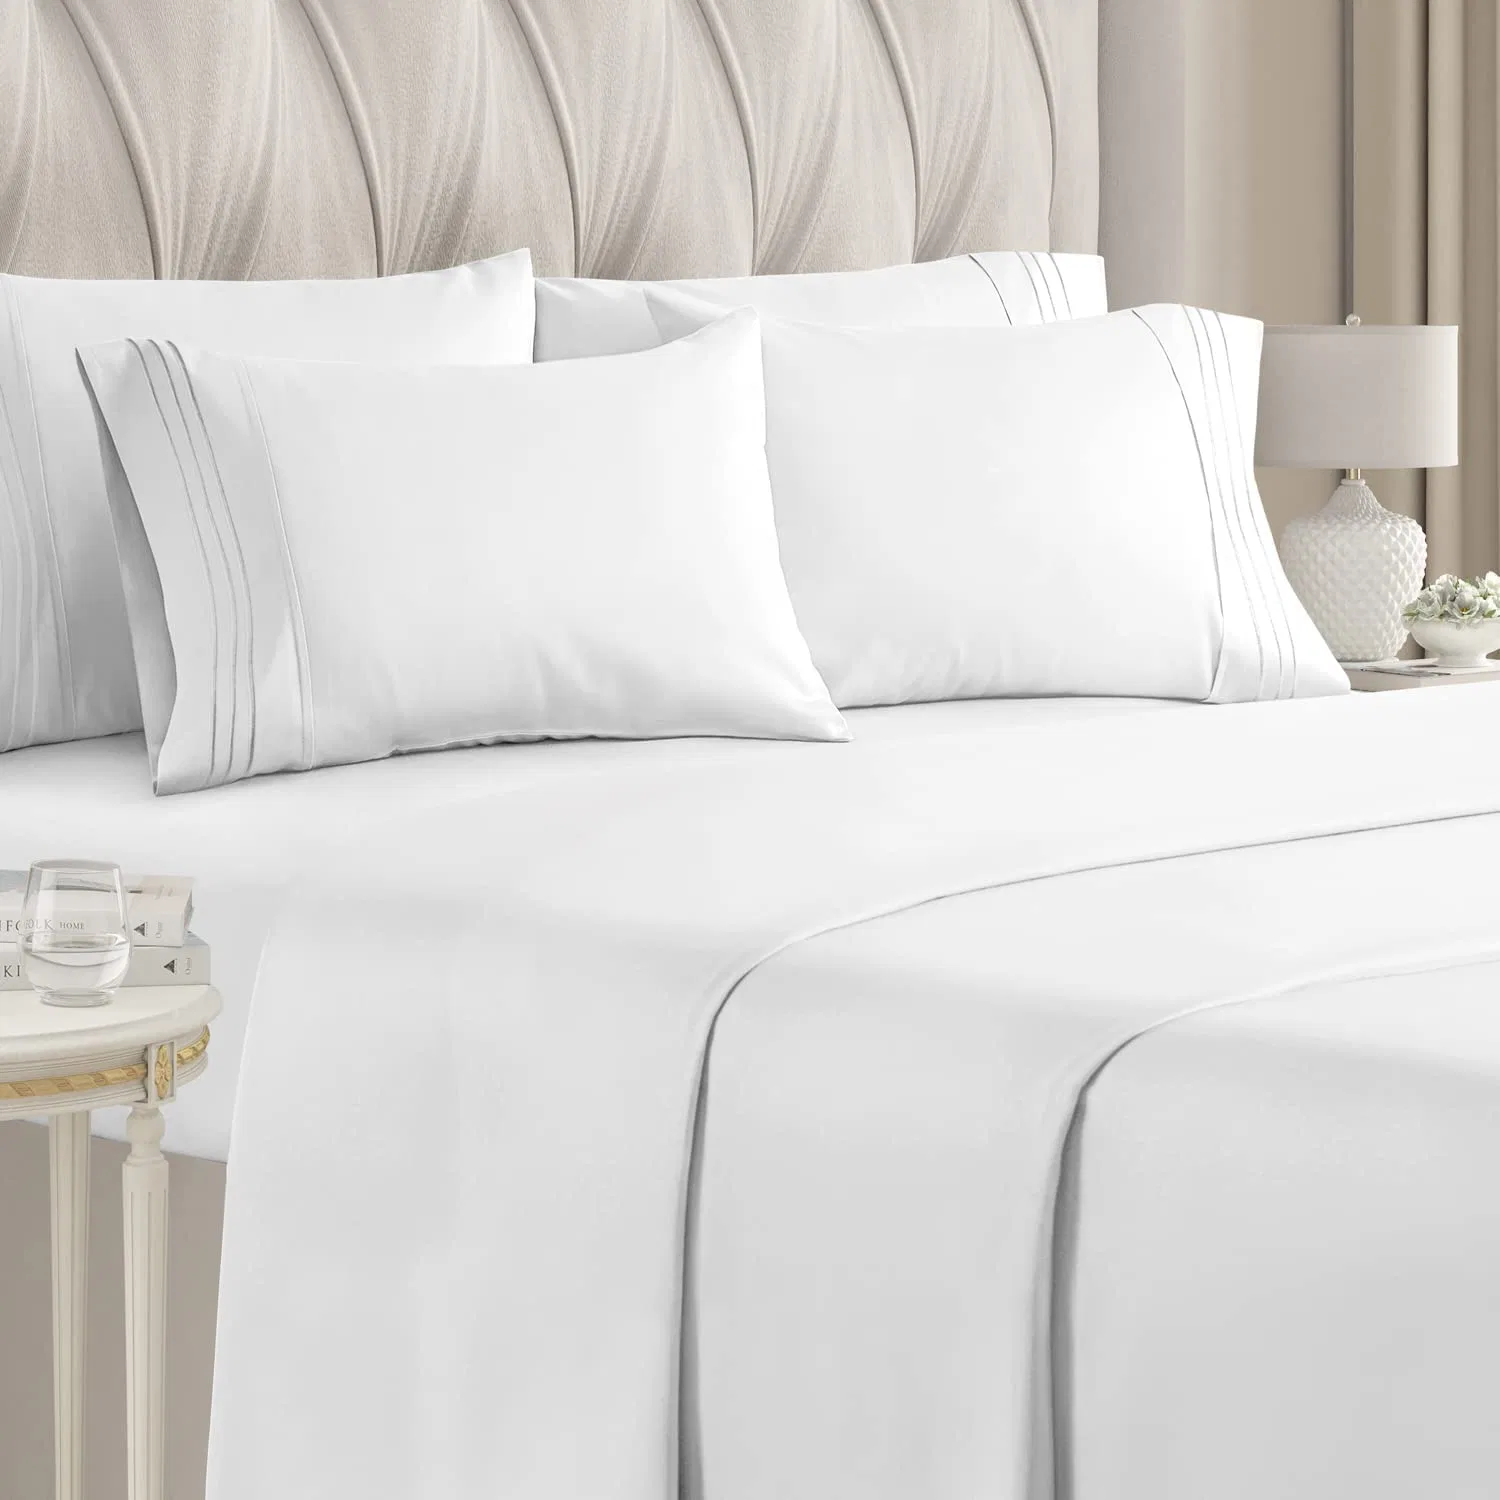 Les draps de lit de voyage jetables feuilles pour l'hôtel, des draps jetables pour le lit de la literie jetables de couvercle couvre-lit portable Ensemble de literie